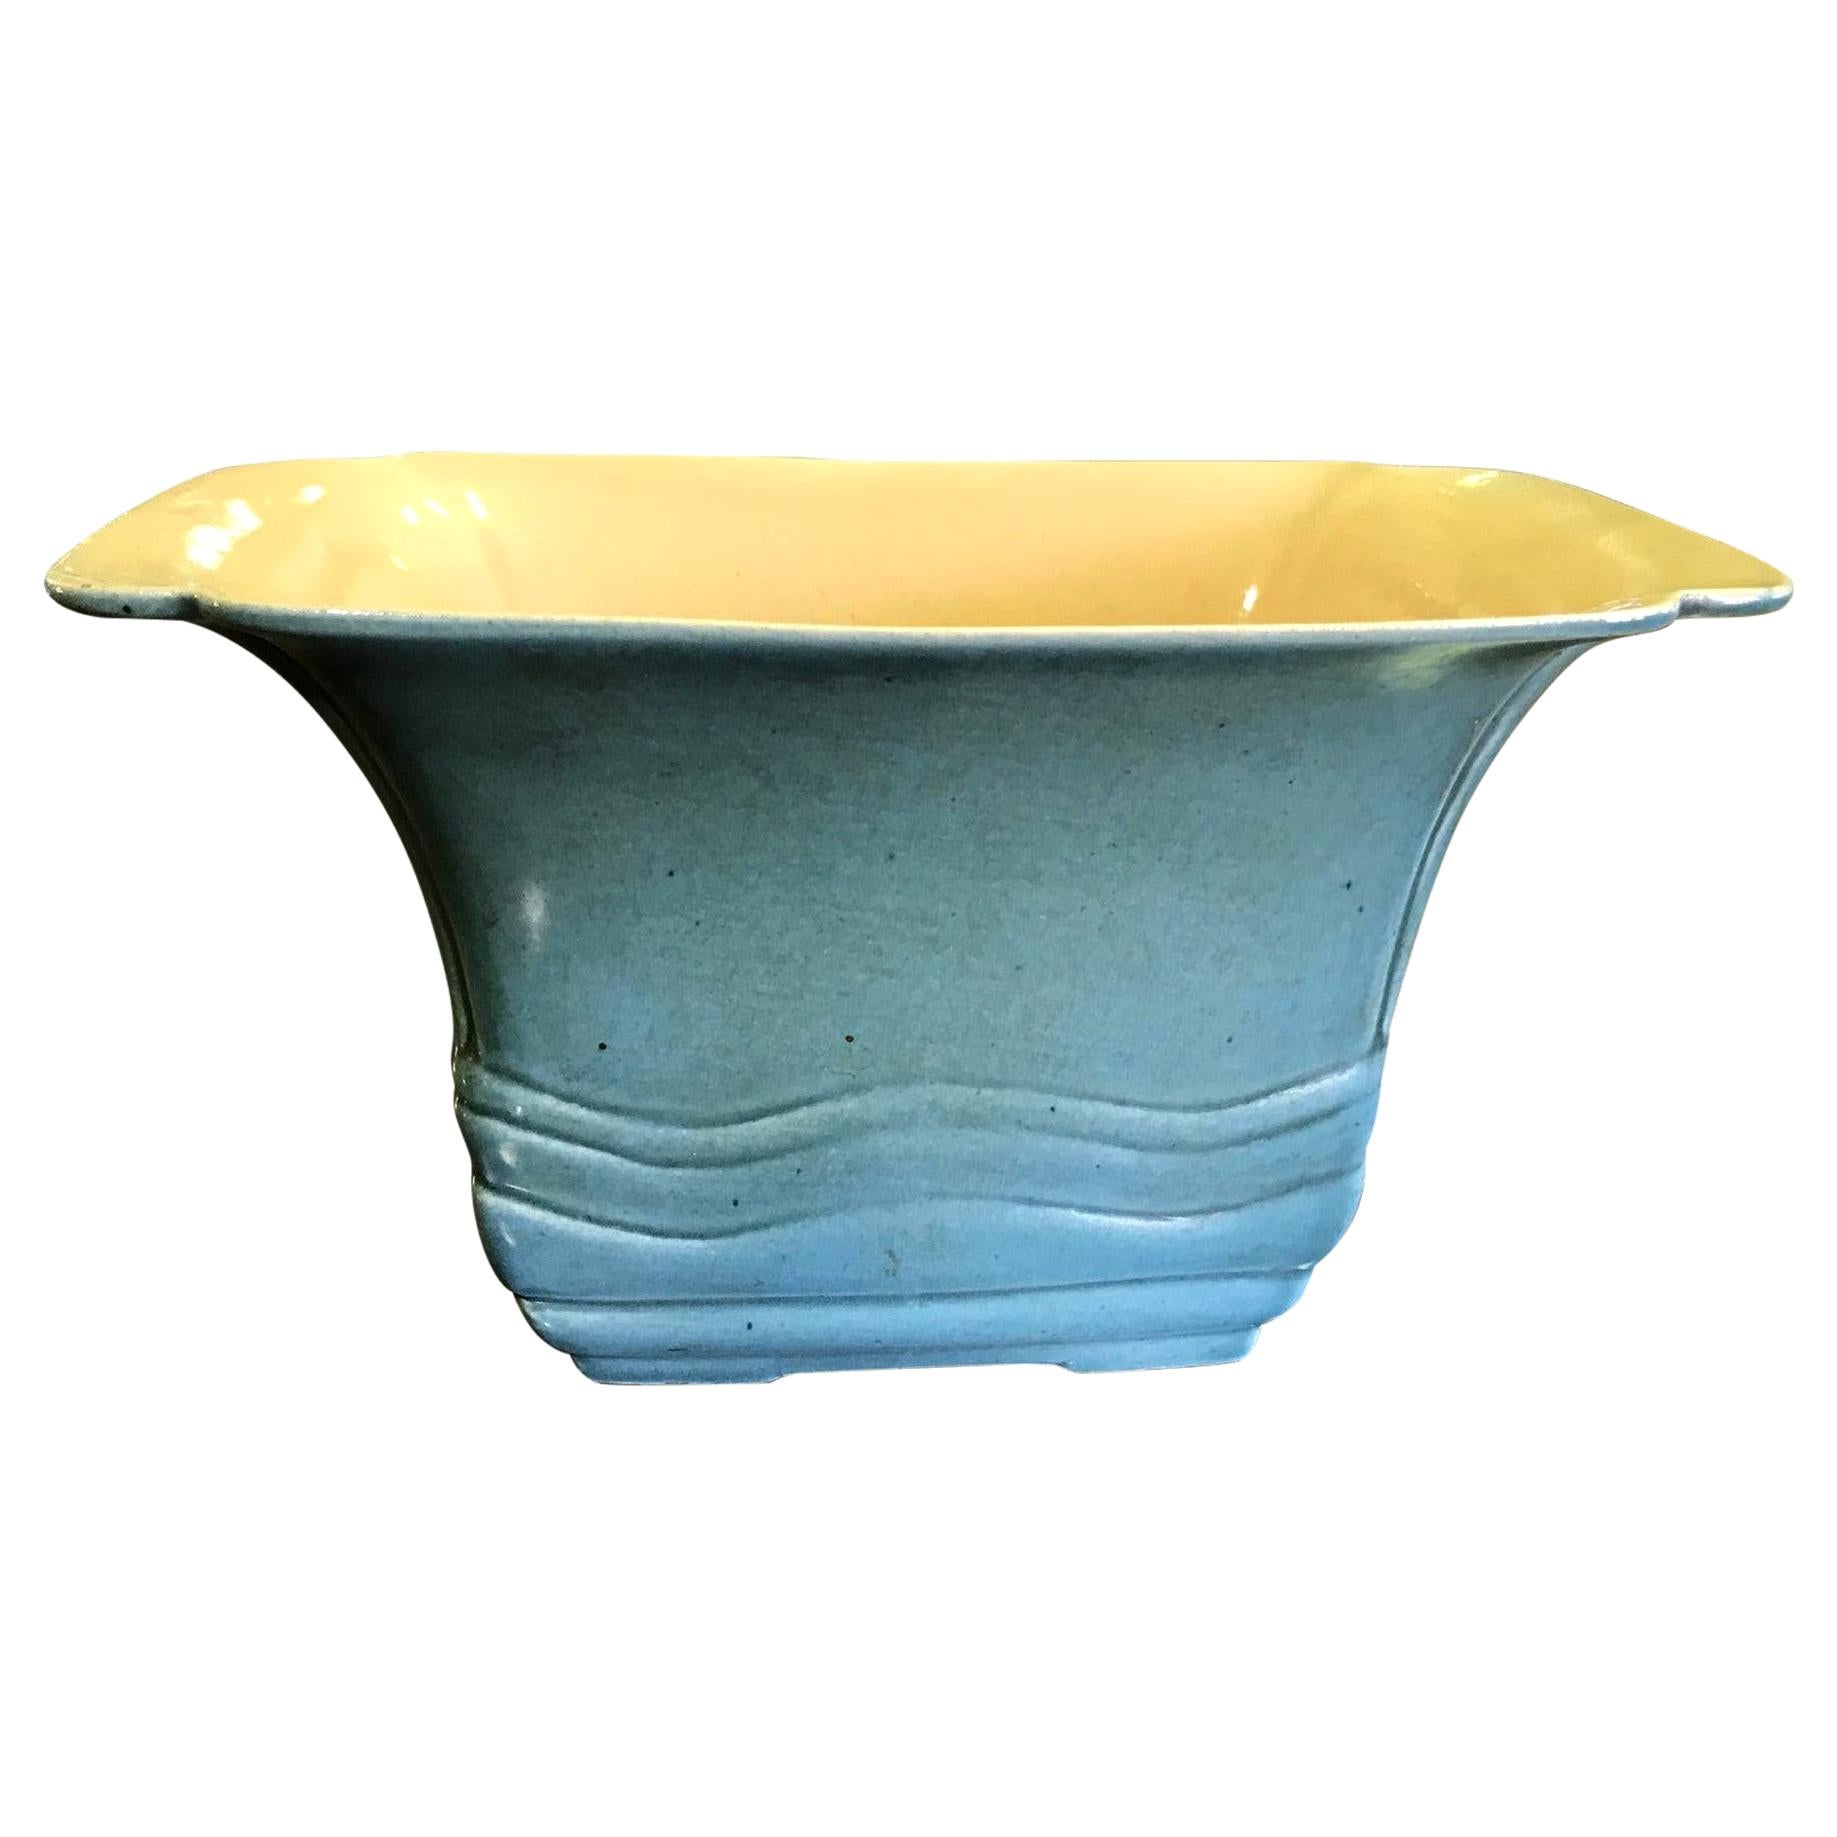 E A Batchelder California Pasadena Ceramic Glazed Pottery Bowl, circa 1930s